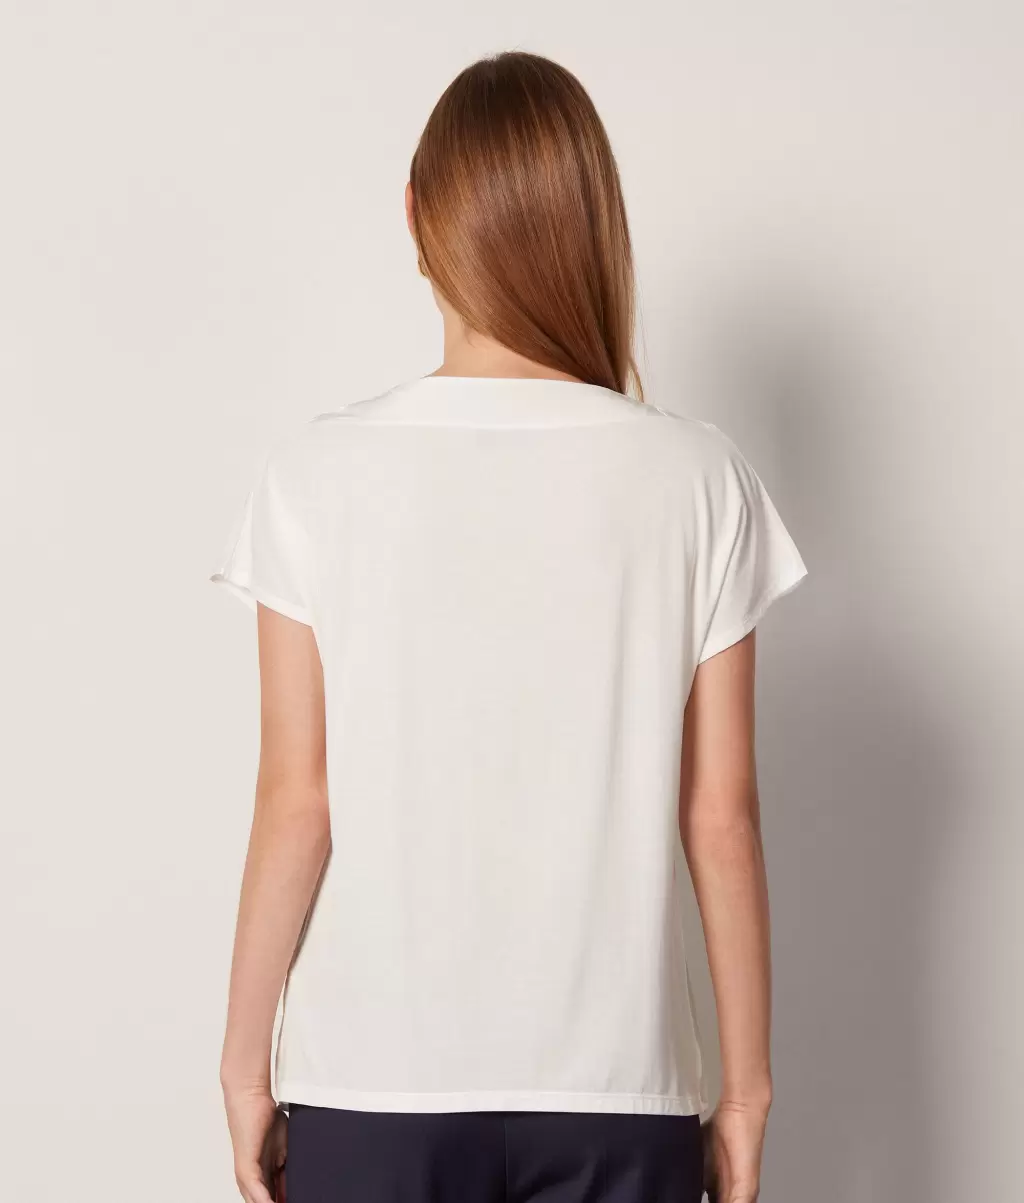 Koszulka Z Dekoltem W Łódkę Z Jedwabiu I Modalu Kobieta Topy I T-Shirty White Falconeri - 2